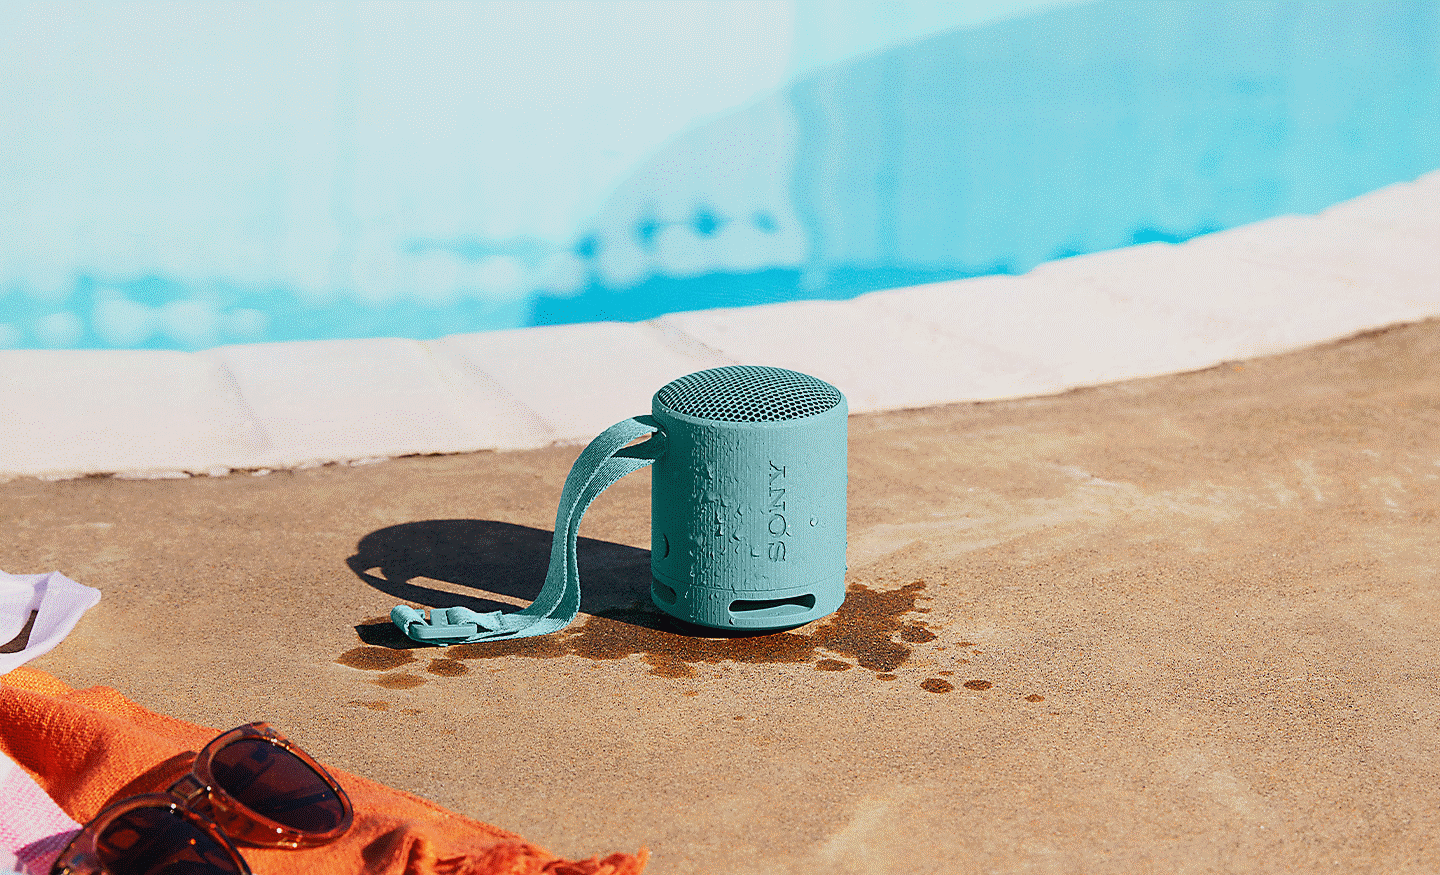 Gambar speaker SRS-XB100 berwarna biru yang basah di sisi kolam renang. Percikan air di sekeliling speaker